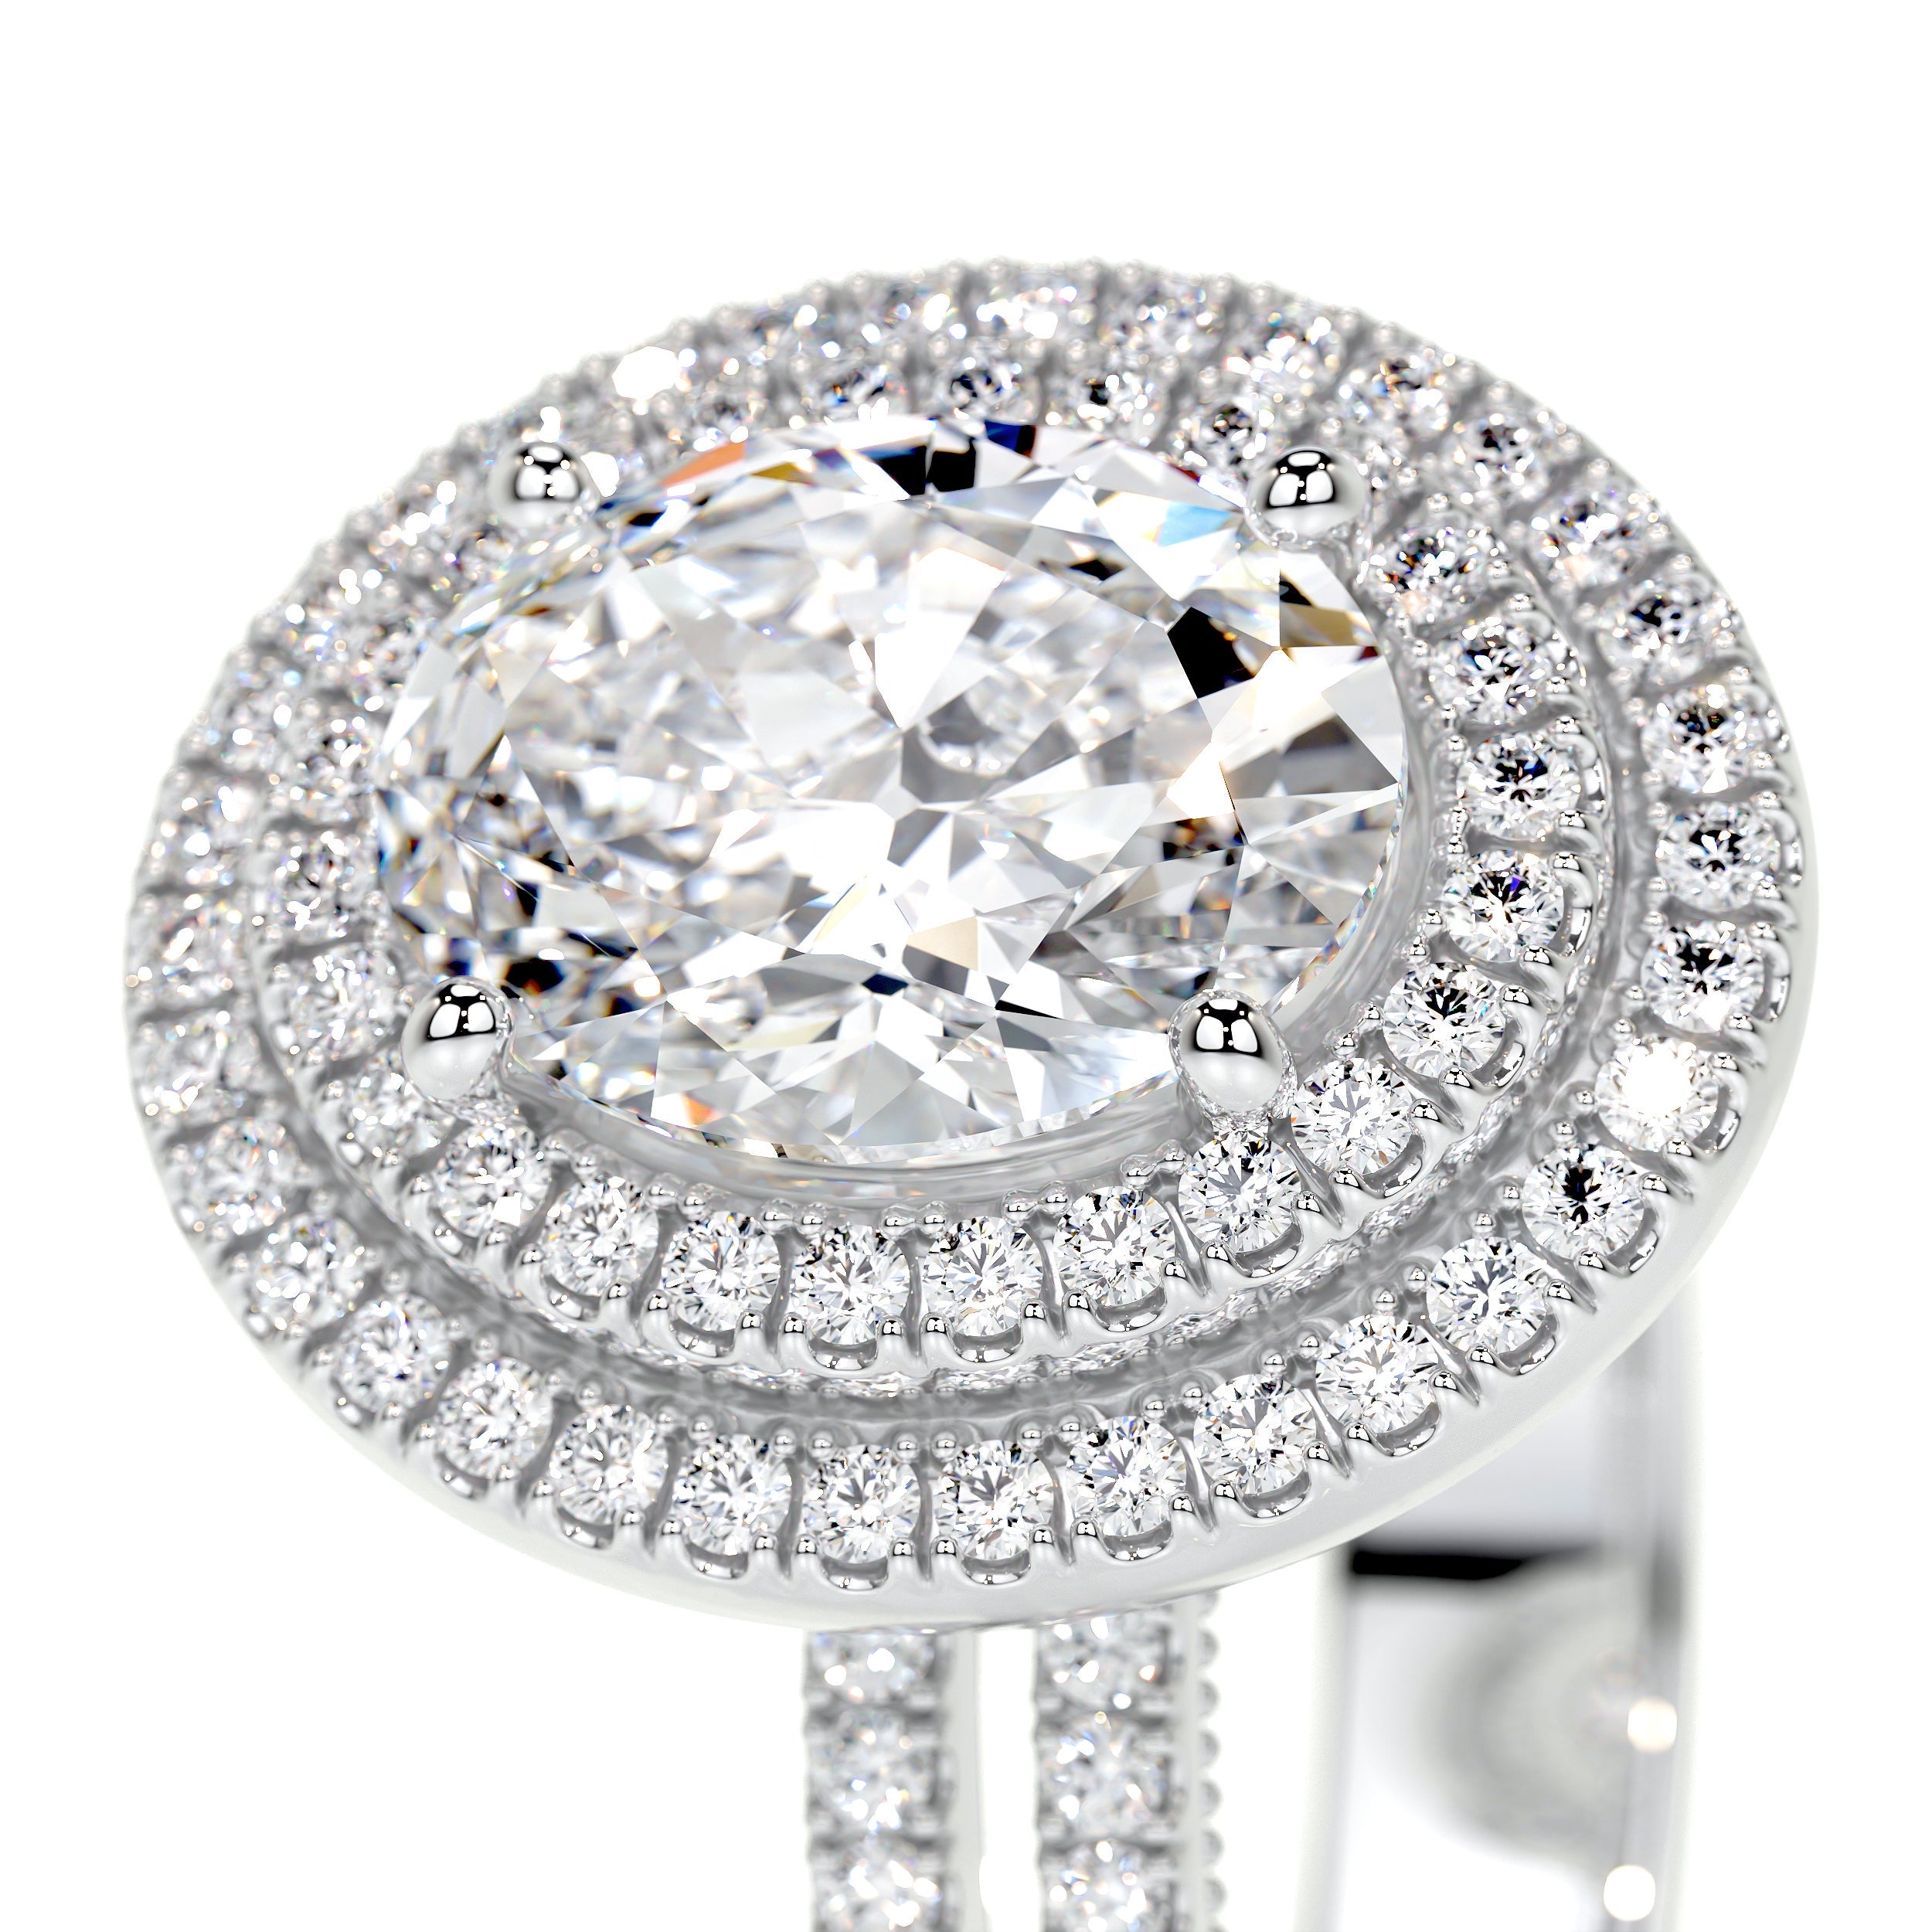 Willa Lab Grown Diamond Ring   (3 Carat) -18K White Gold